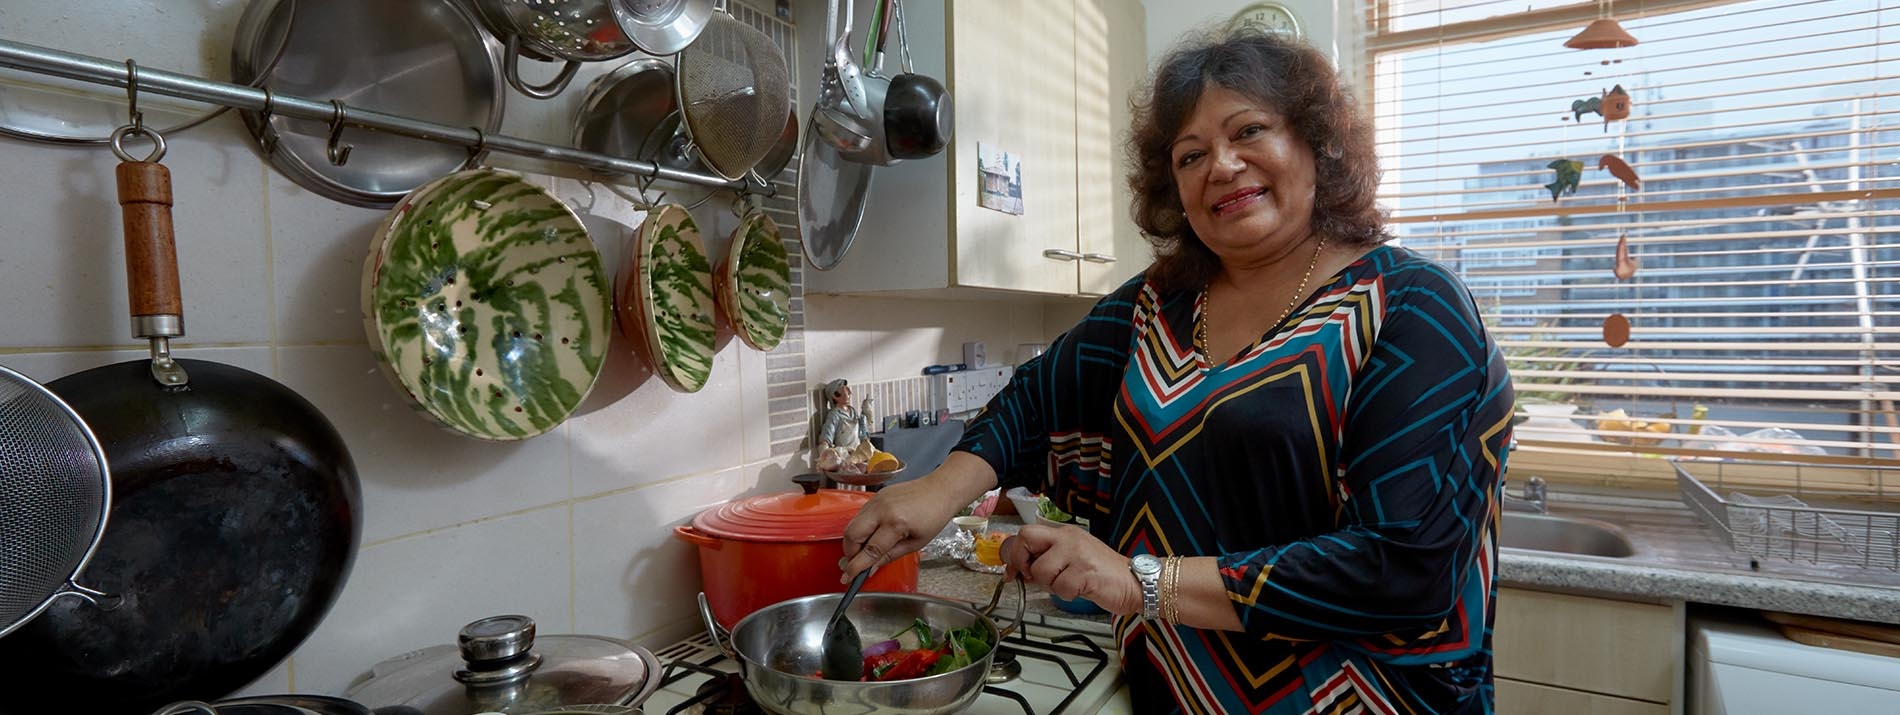 Μια γυναίκα που στέκεται στην κουζίνα της τηγανίζοντας λαχανικά.